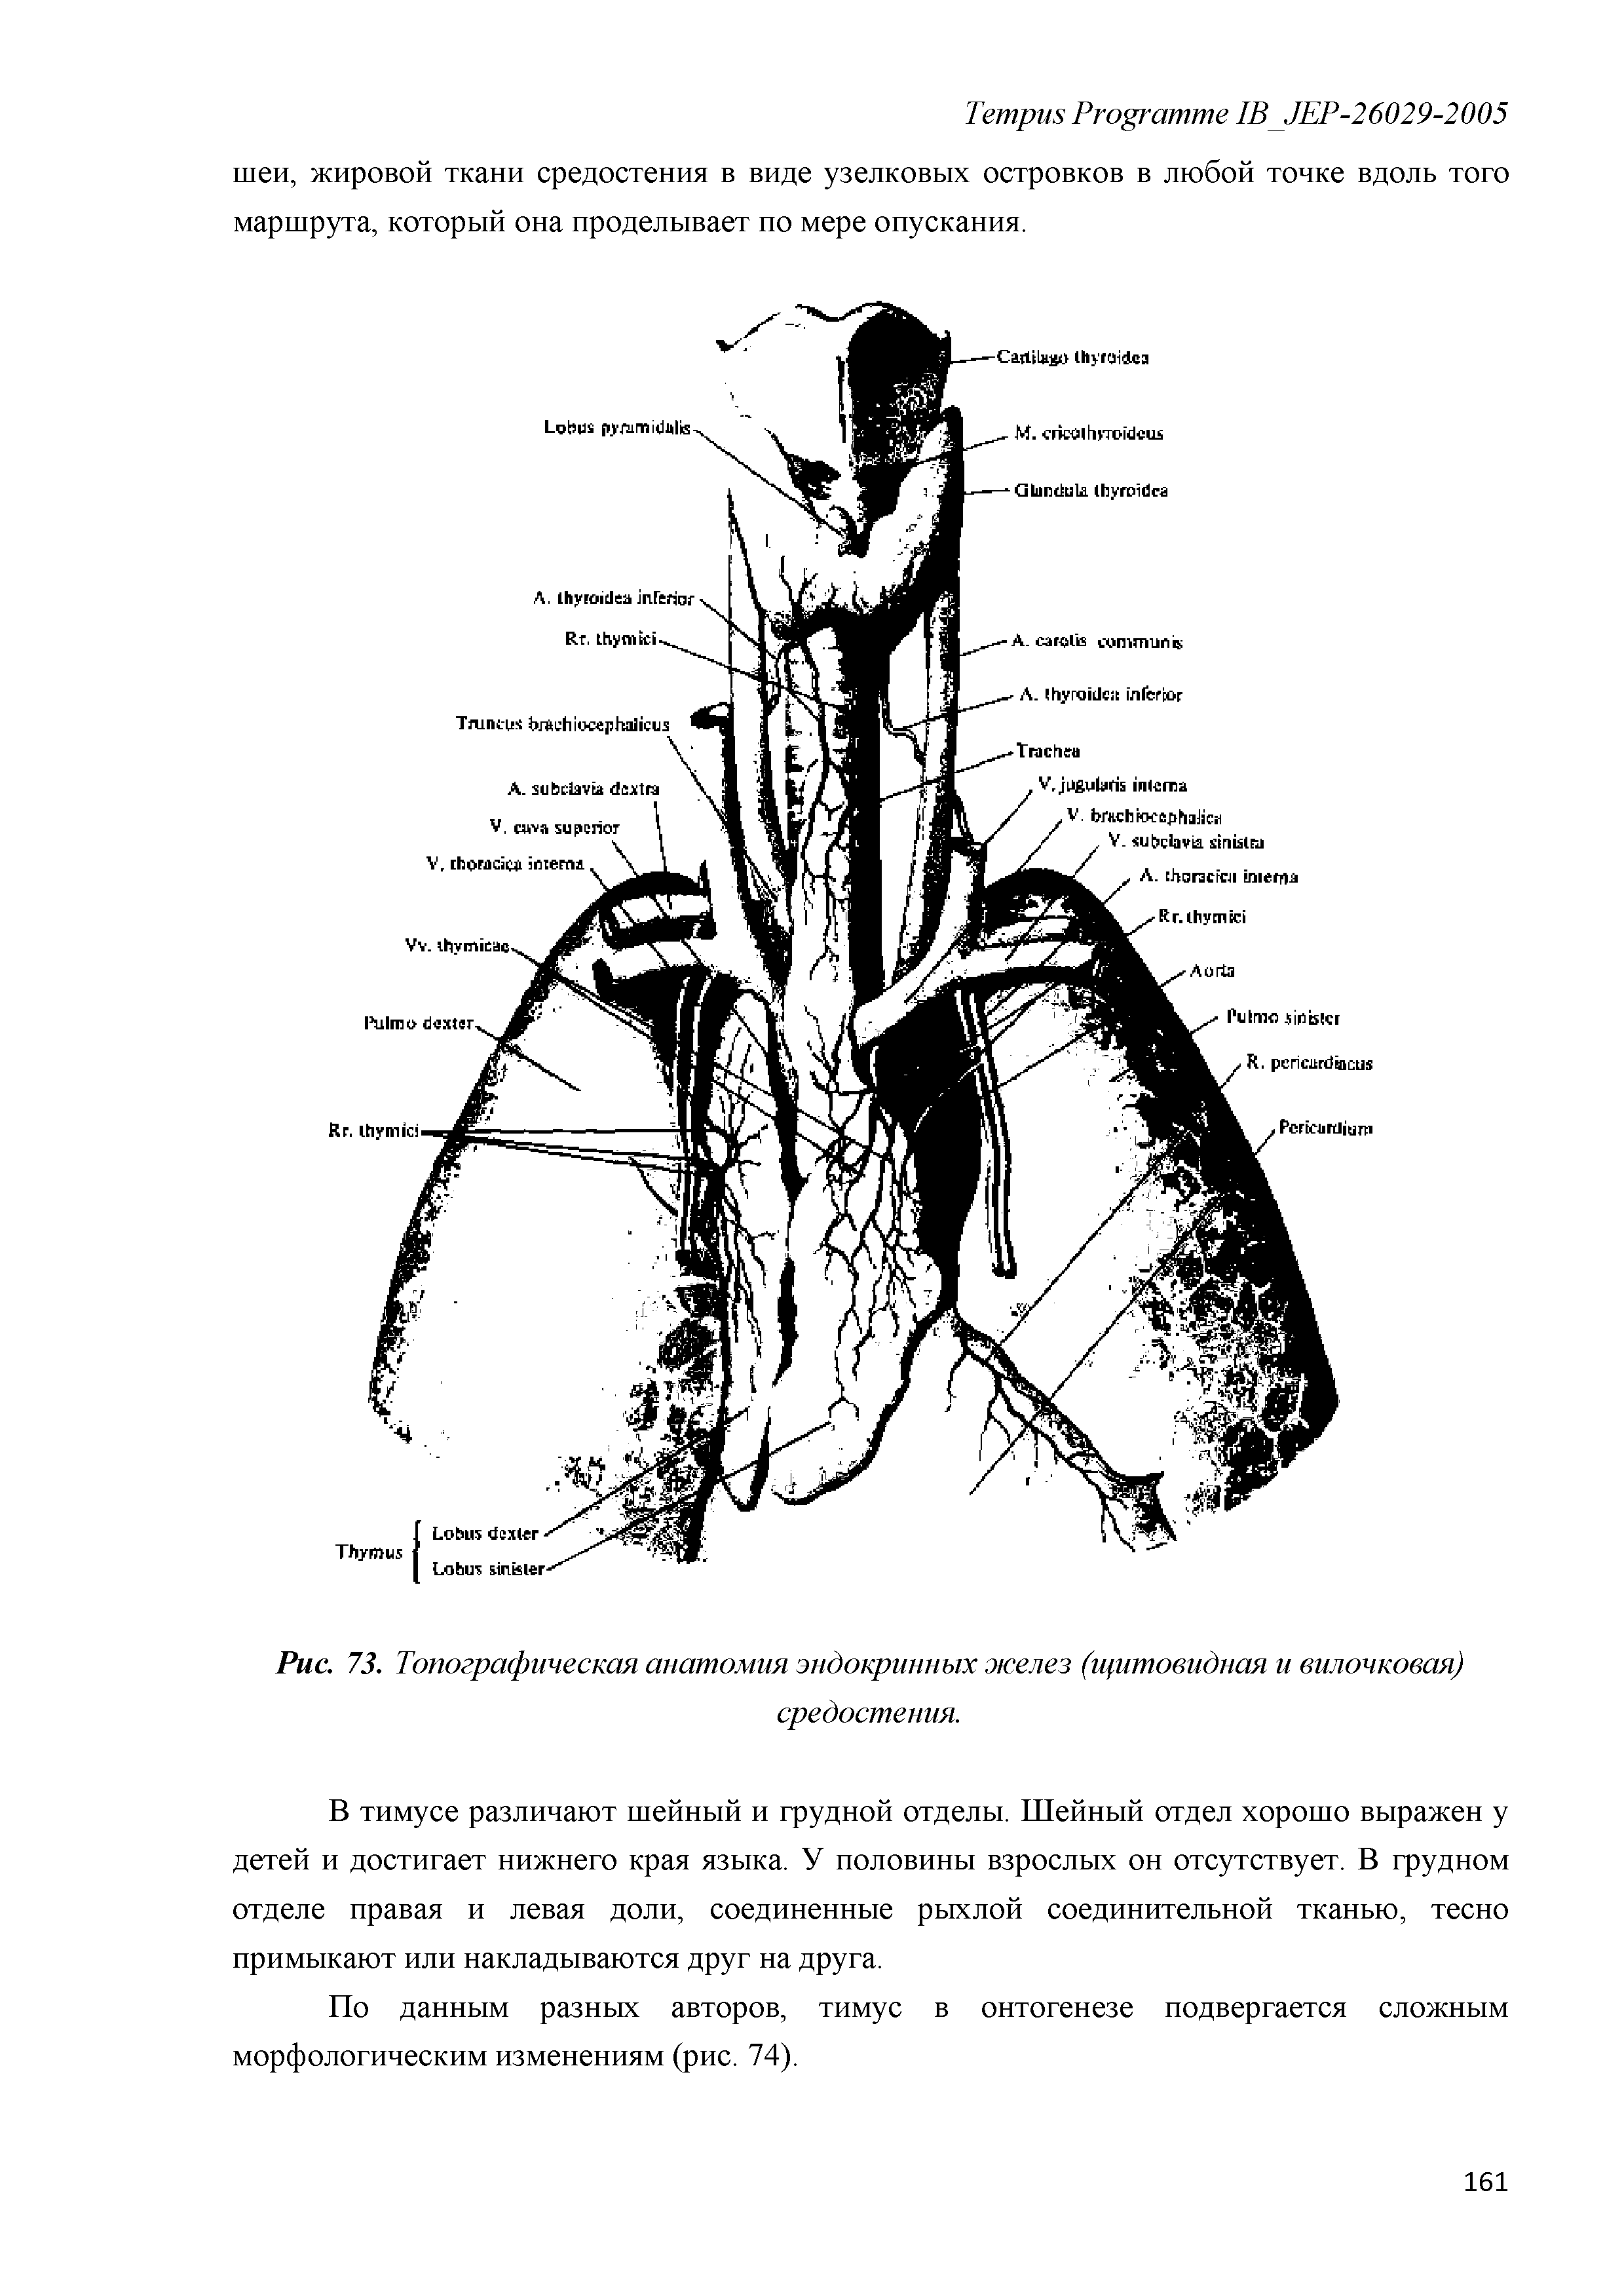 Рис. 73. Топографическая анатомия эндокринных желез (щитовидная и вилочковая) средостения.